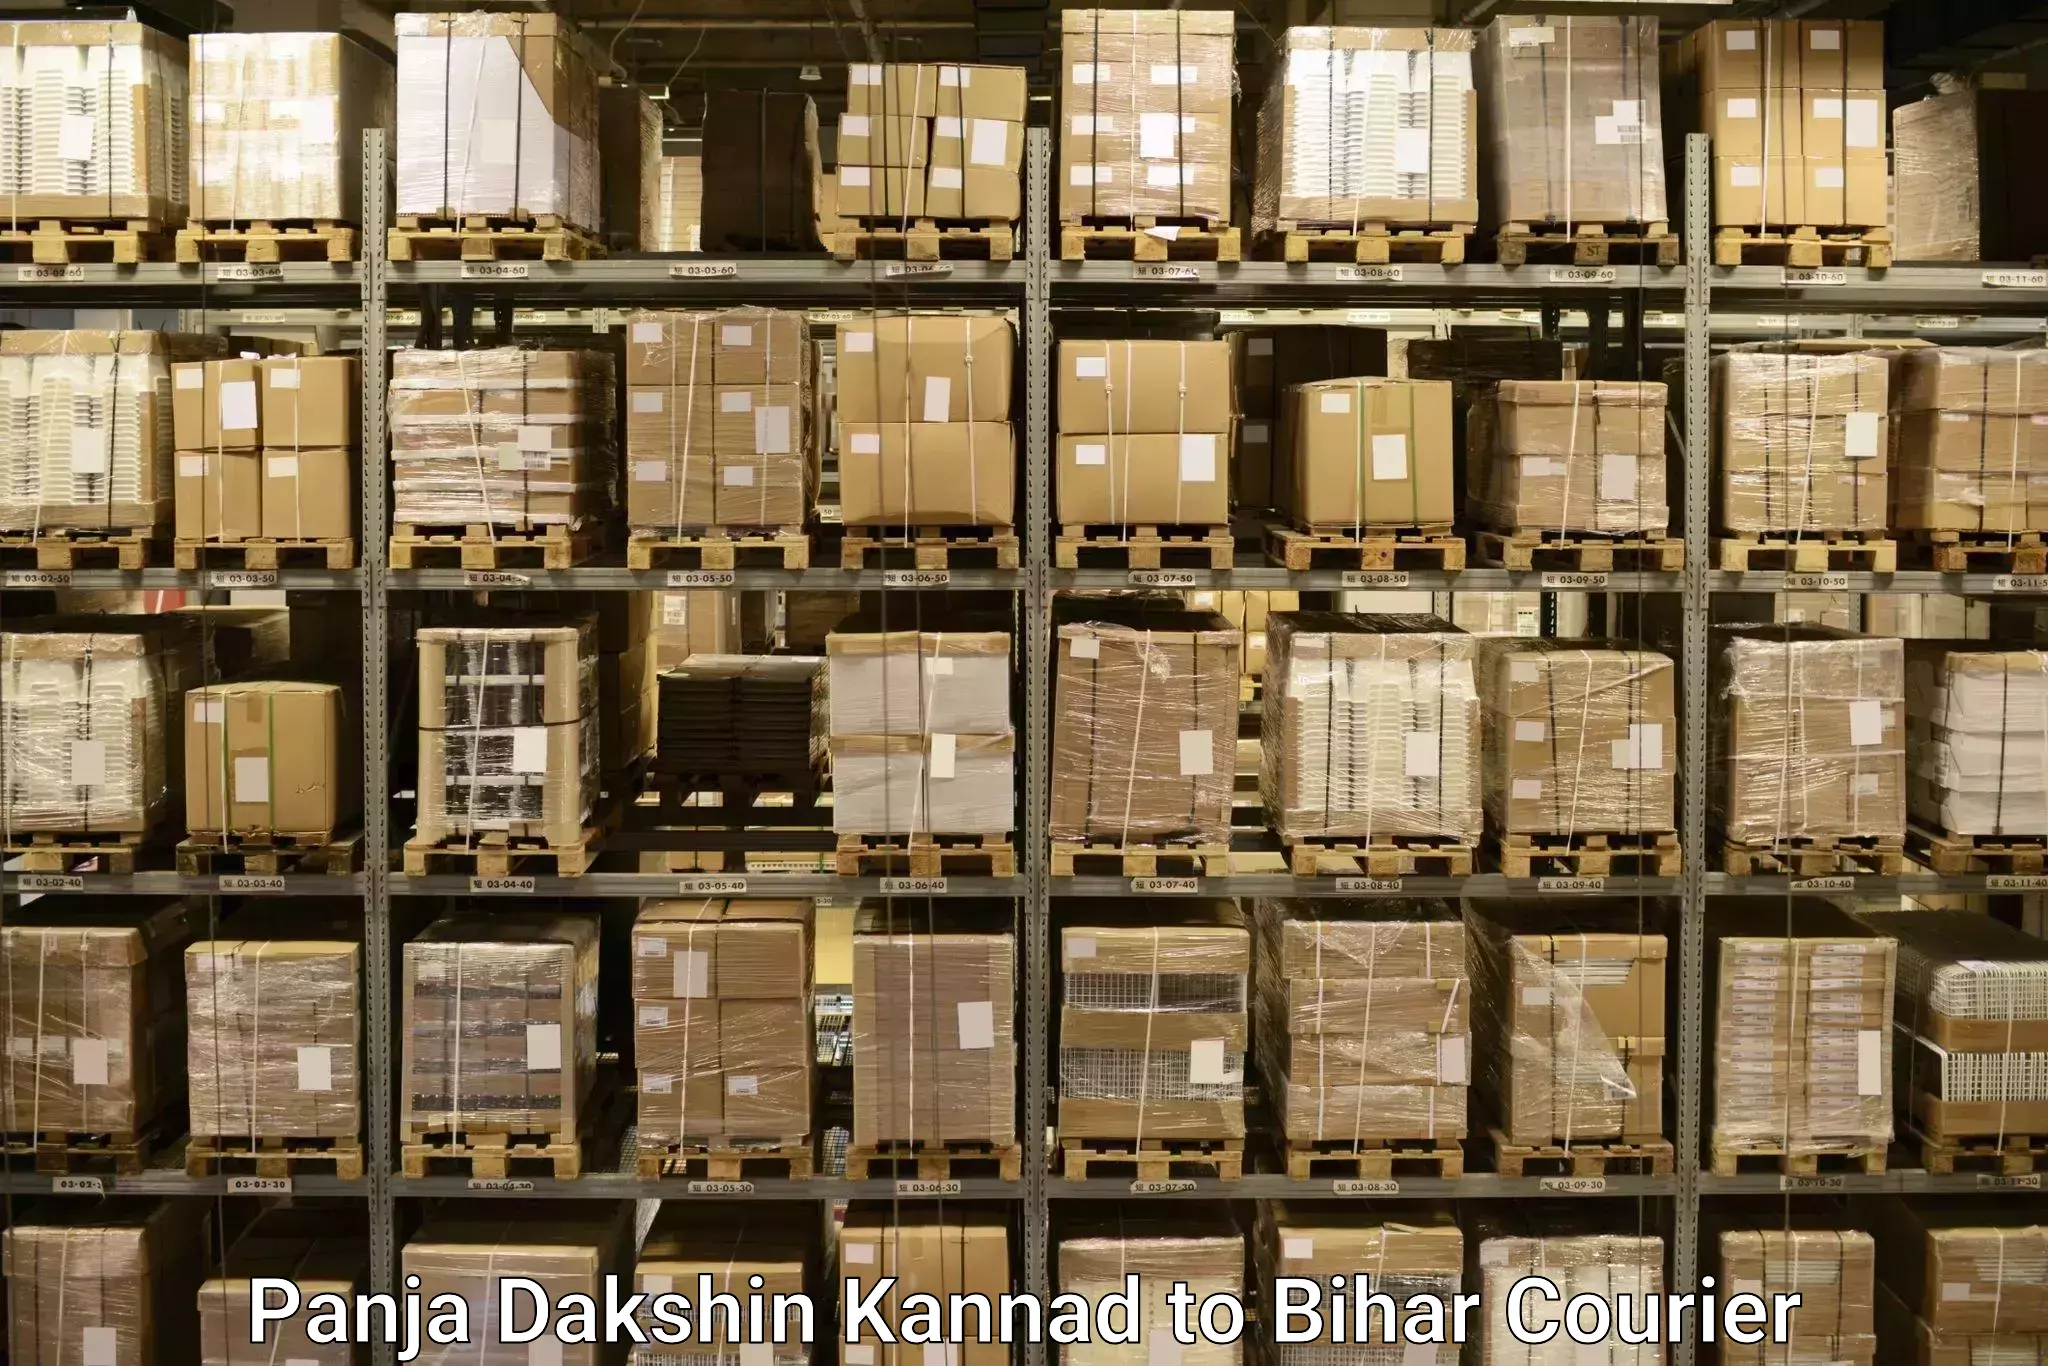 Baggage shipping schedule Panja Dakshin Kannad to Bikramganj